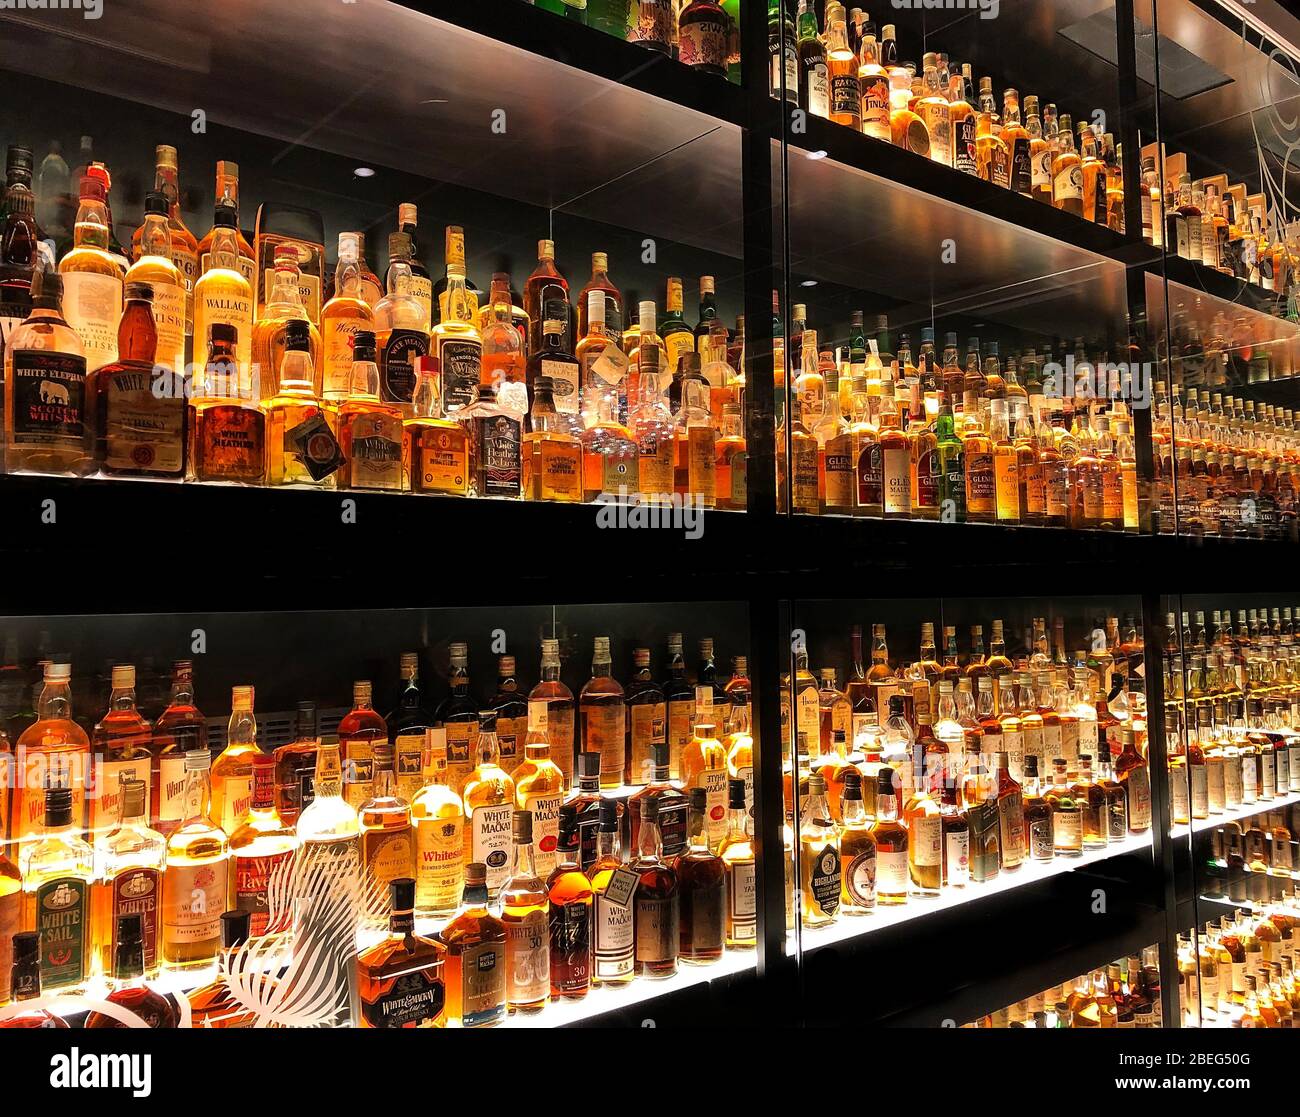 Edimburgo, Scozia - 12 maggio 2019: La collezione di 3.384 bottiglie di whisky di Diageo Claive Vidiz, esposta alla Scotch Whisky Experience. Foto Stock